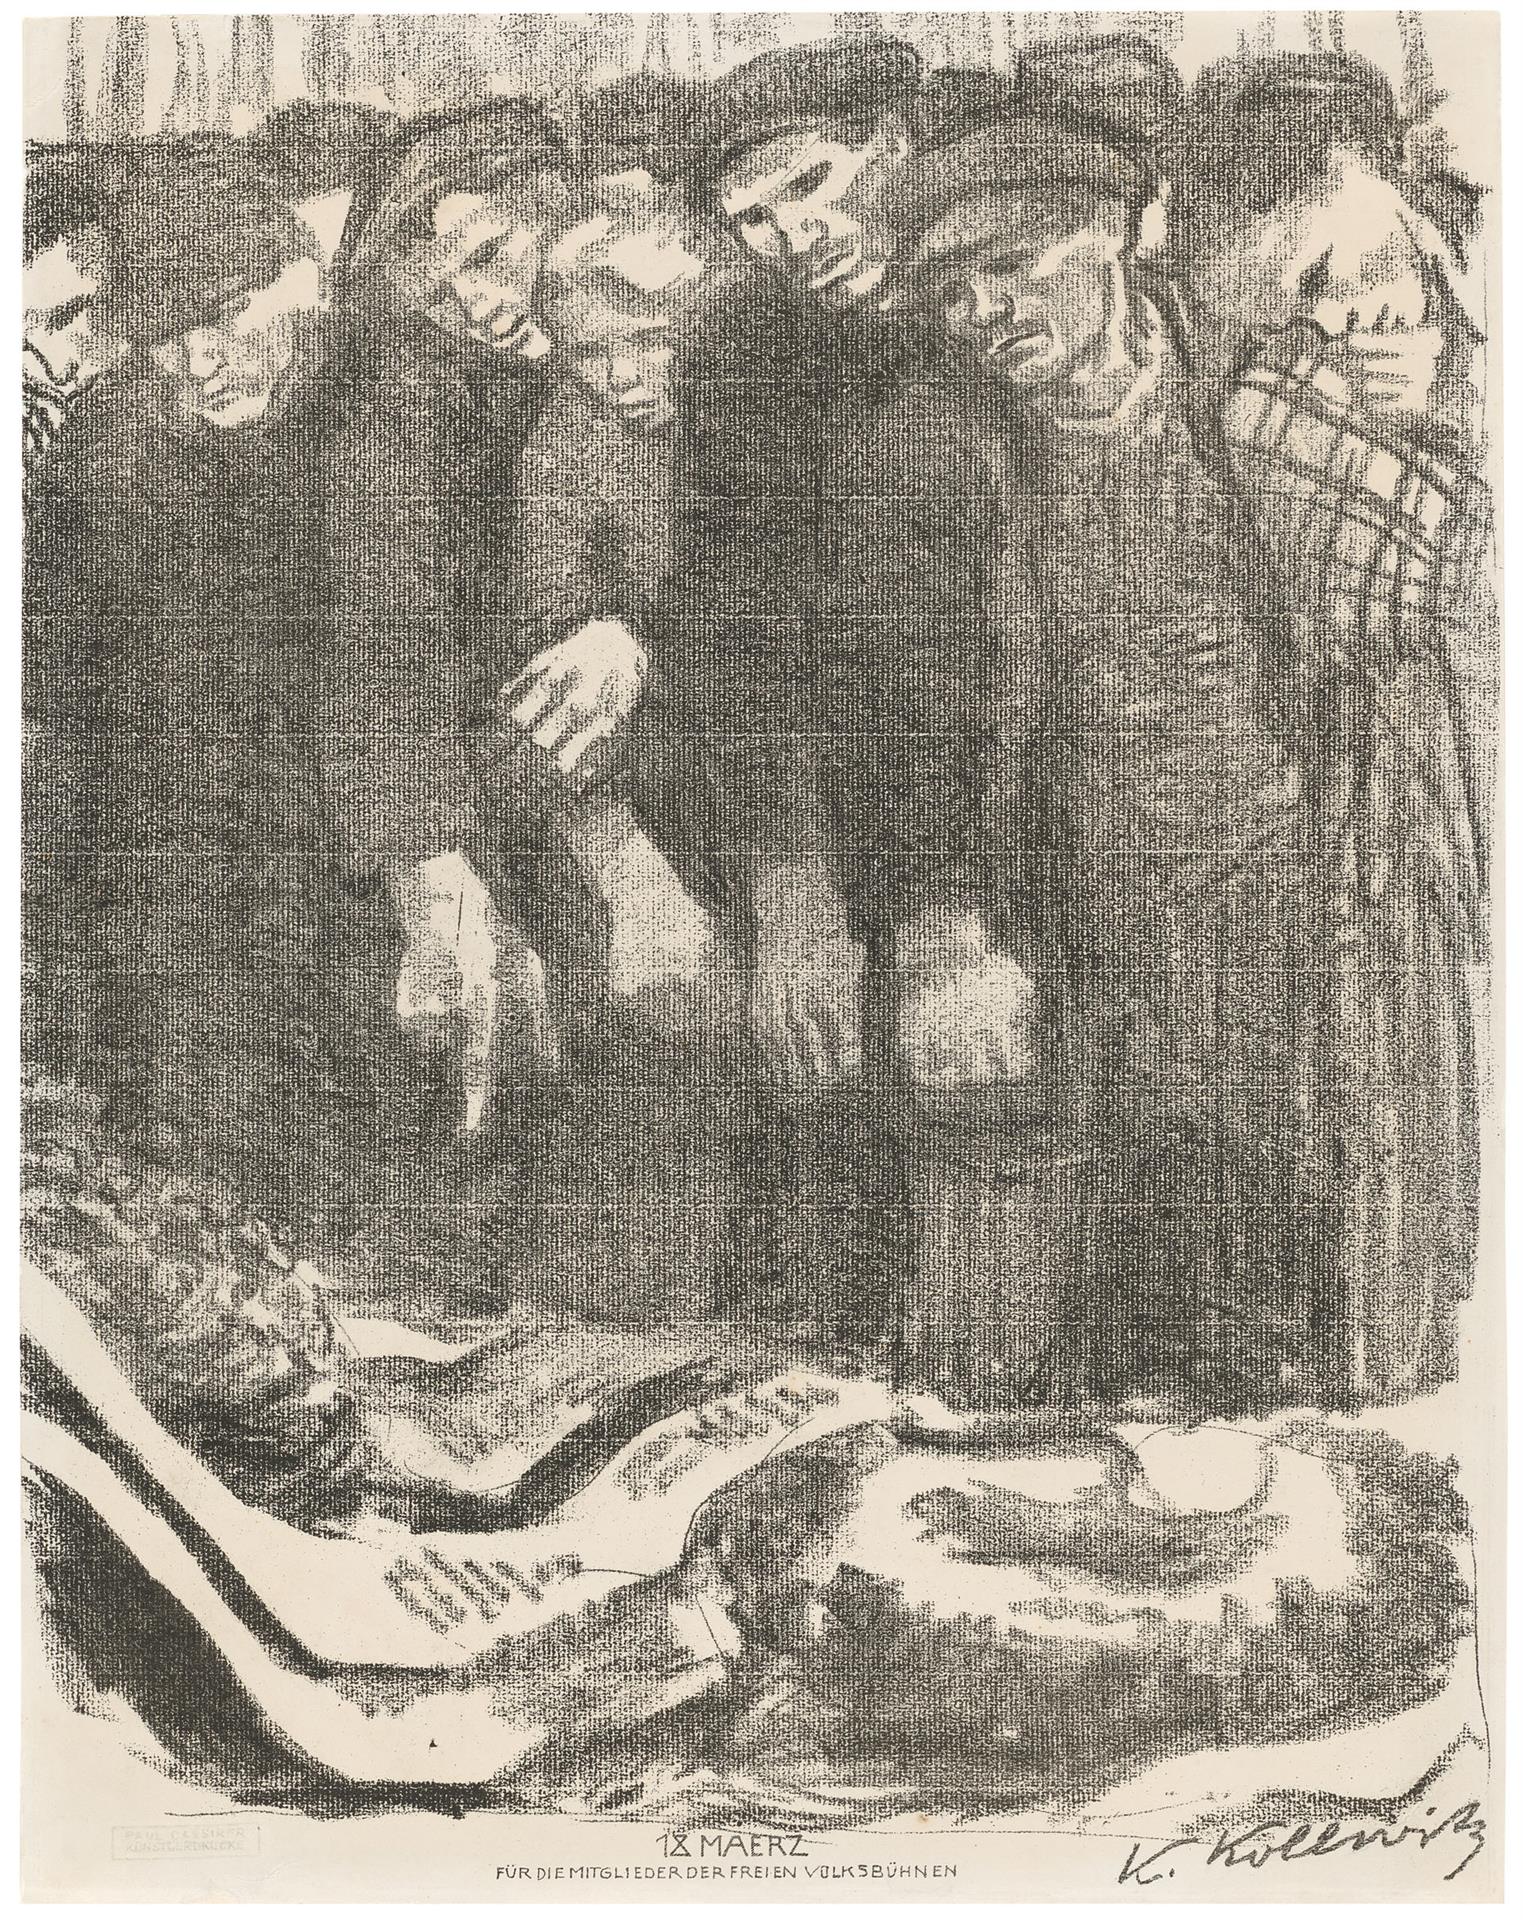 Käthe Kollwitz, Cimetière de mars, troisième version, 1913, lithographie au crayon (report), Kn 128, Collection Kollwitz de Cologne © Käthe Kollwitz Museum Köln